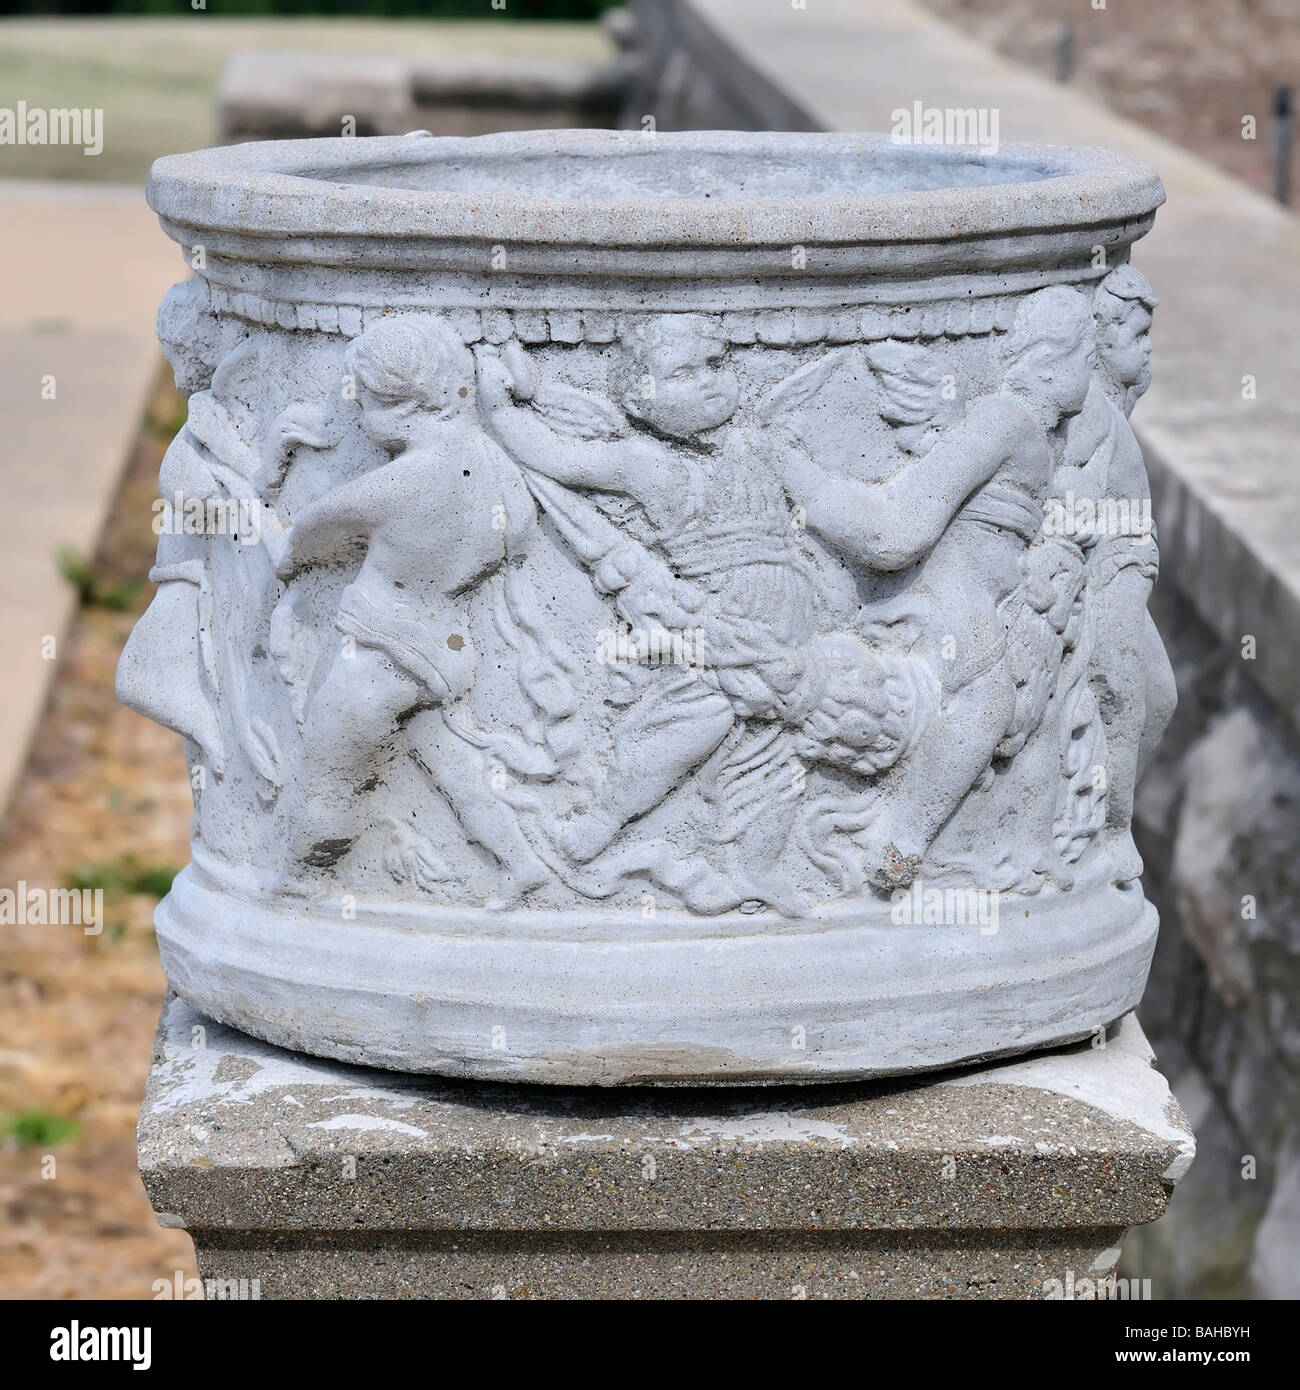 Eine kunstvoll geschnitzten Urne mit Putten, die sitzt auf dem Gelände der Marland-Villa in Ponca City, Oklahoma, USA. Stockfoto